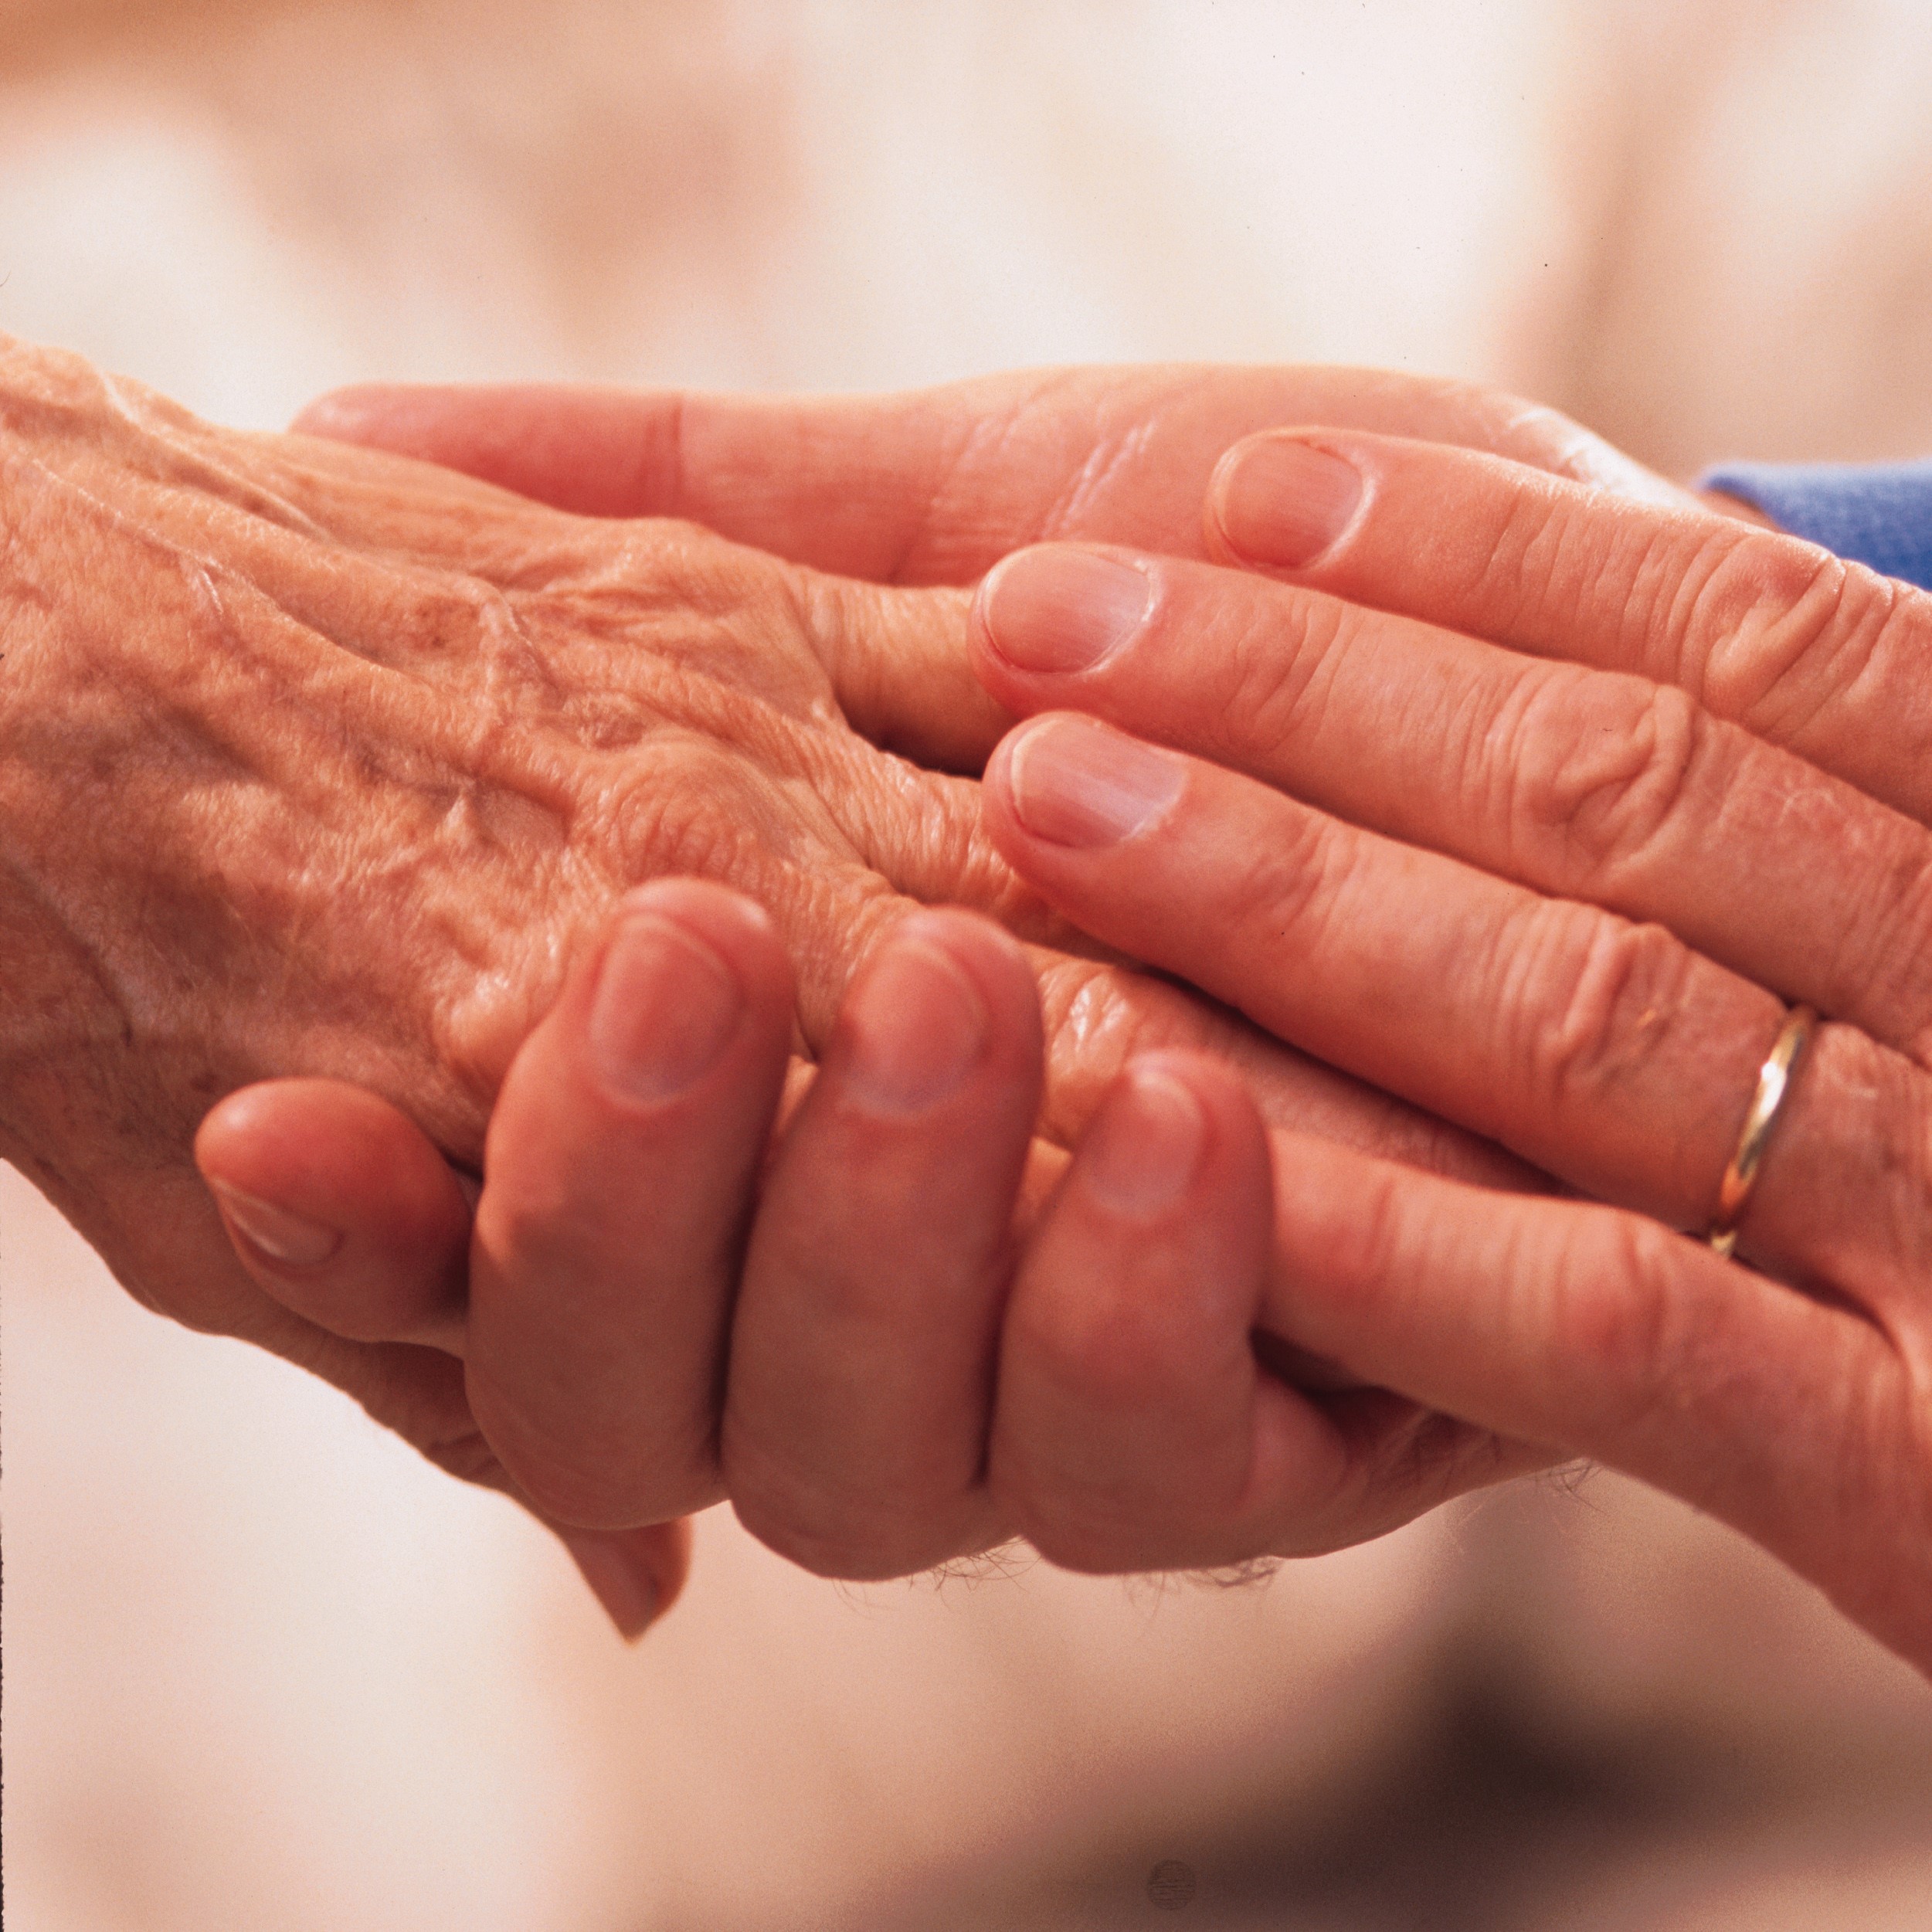 a hand clutching an elder's hand